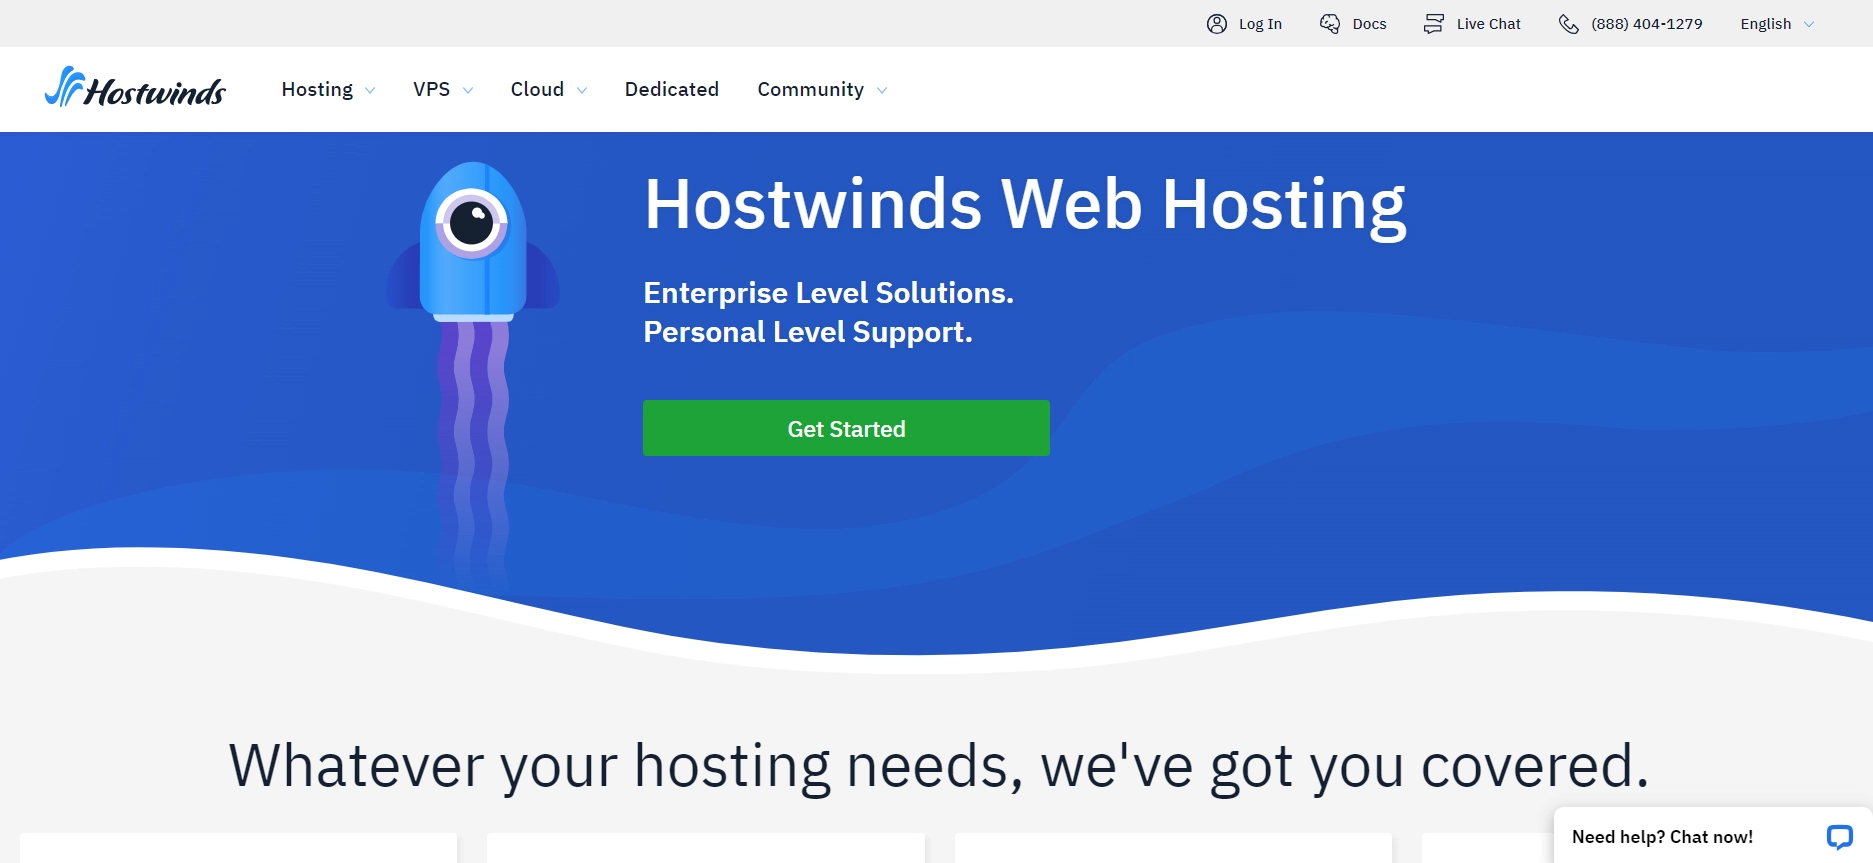 Hostwinds VPS Hosting provider